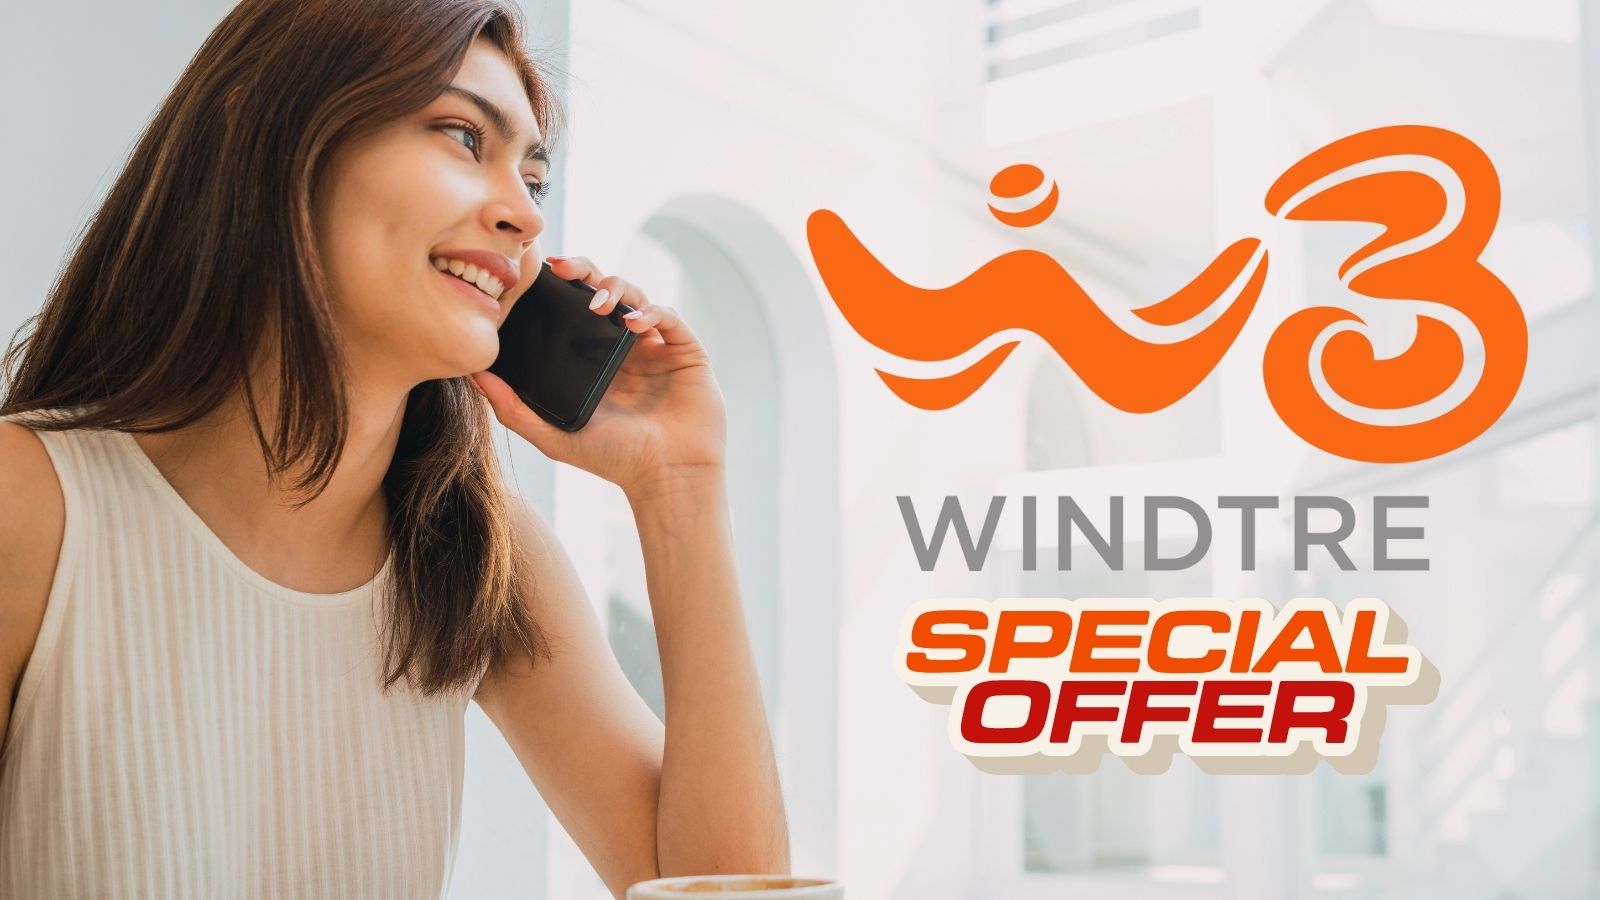  WindTre sorprende i clienti con nuove Offerte e Promo Esclusive